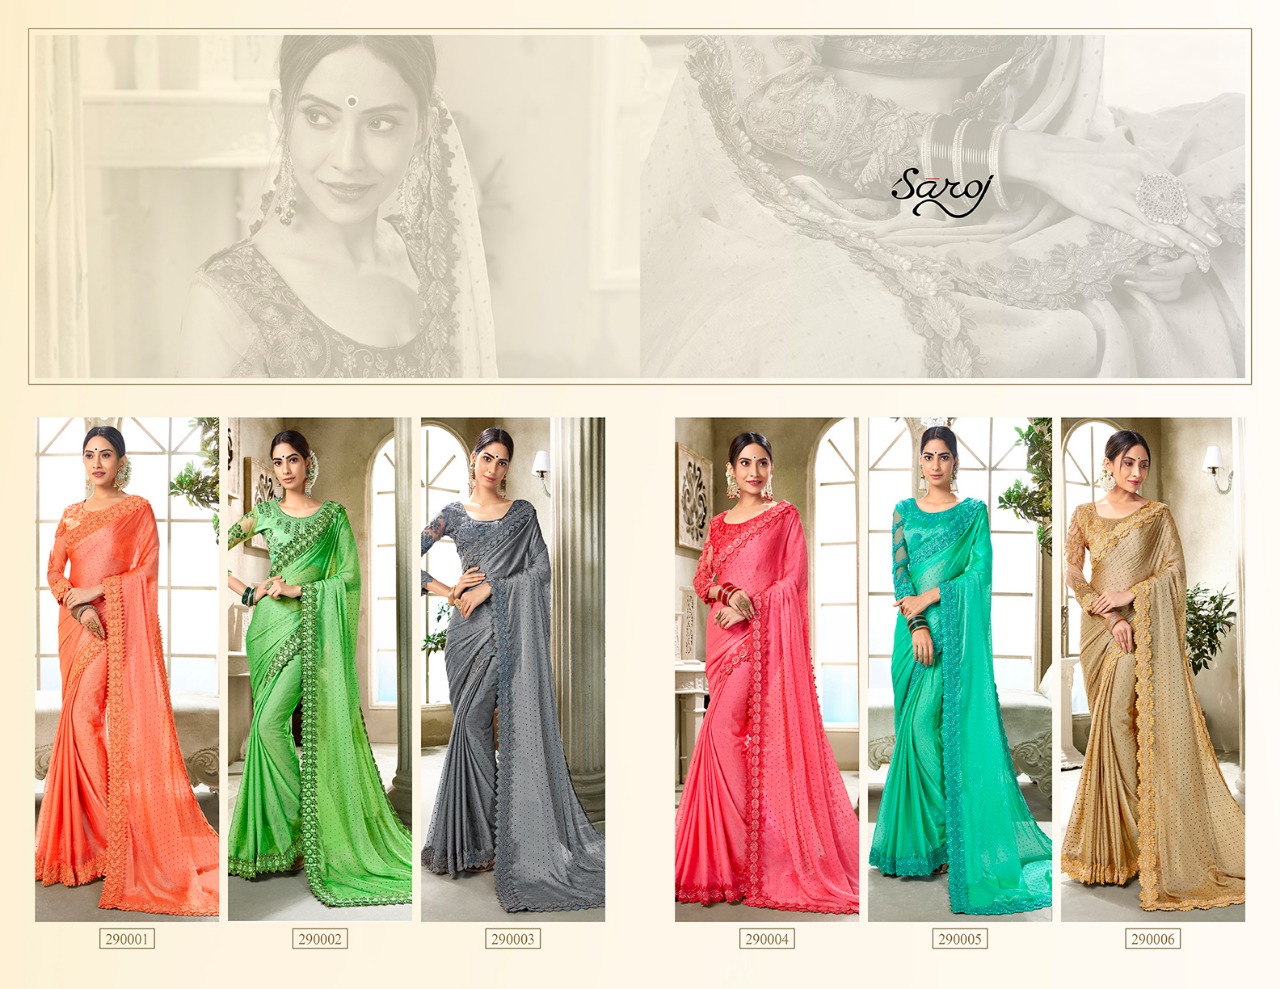 Saroj Aarzoo premium collection of designer sarres